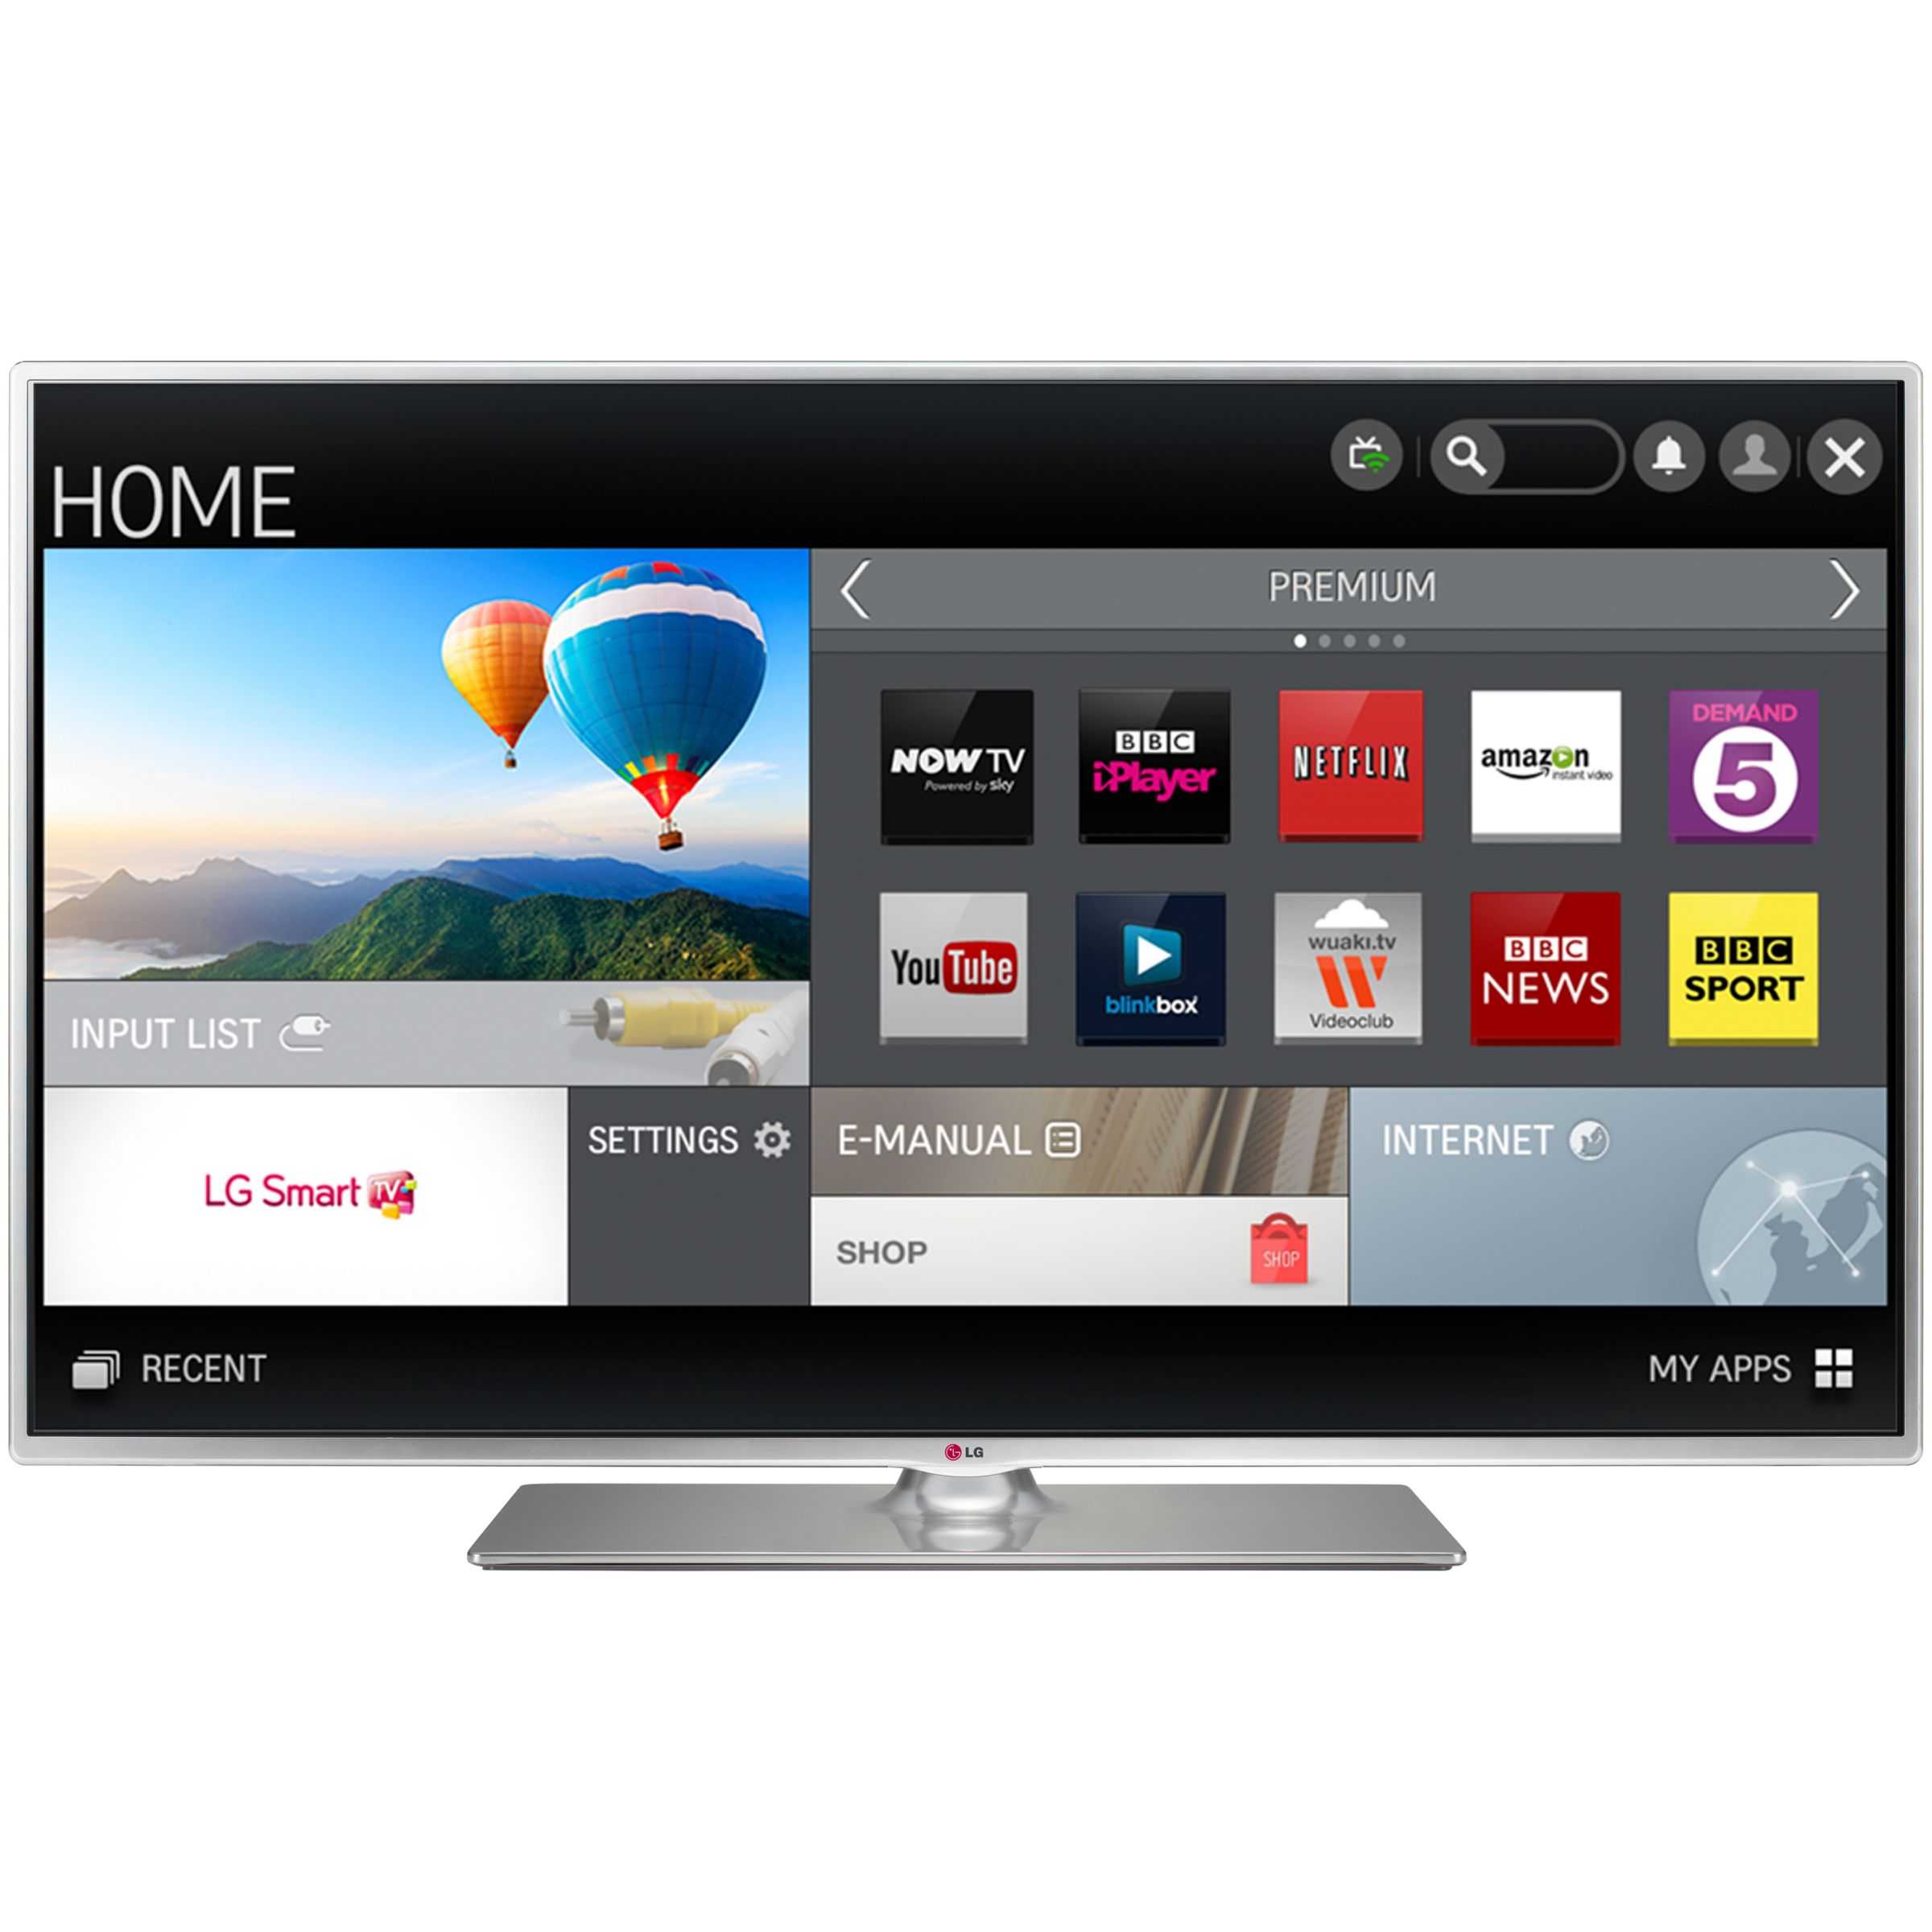 Телевизор LG 39LB580V - подробные характеристики обзоры видео фото Цены в интернет-магазинах где можно купить телевизор LG 39LB580V